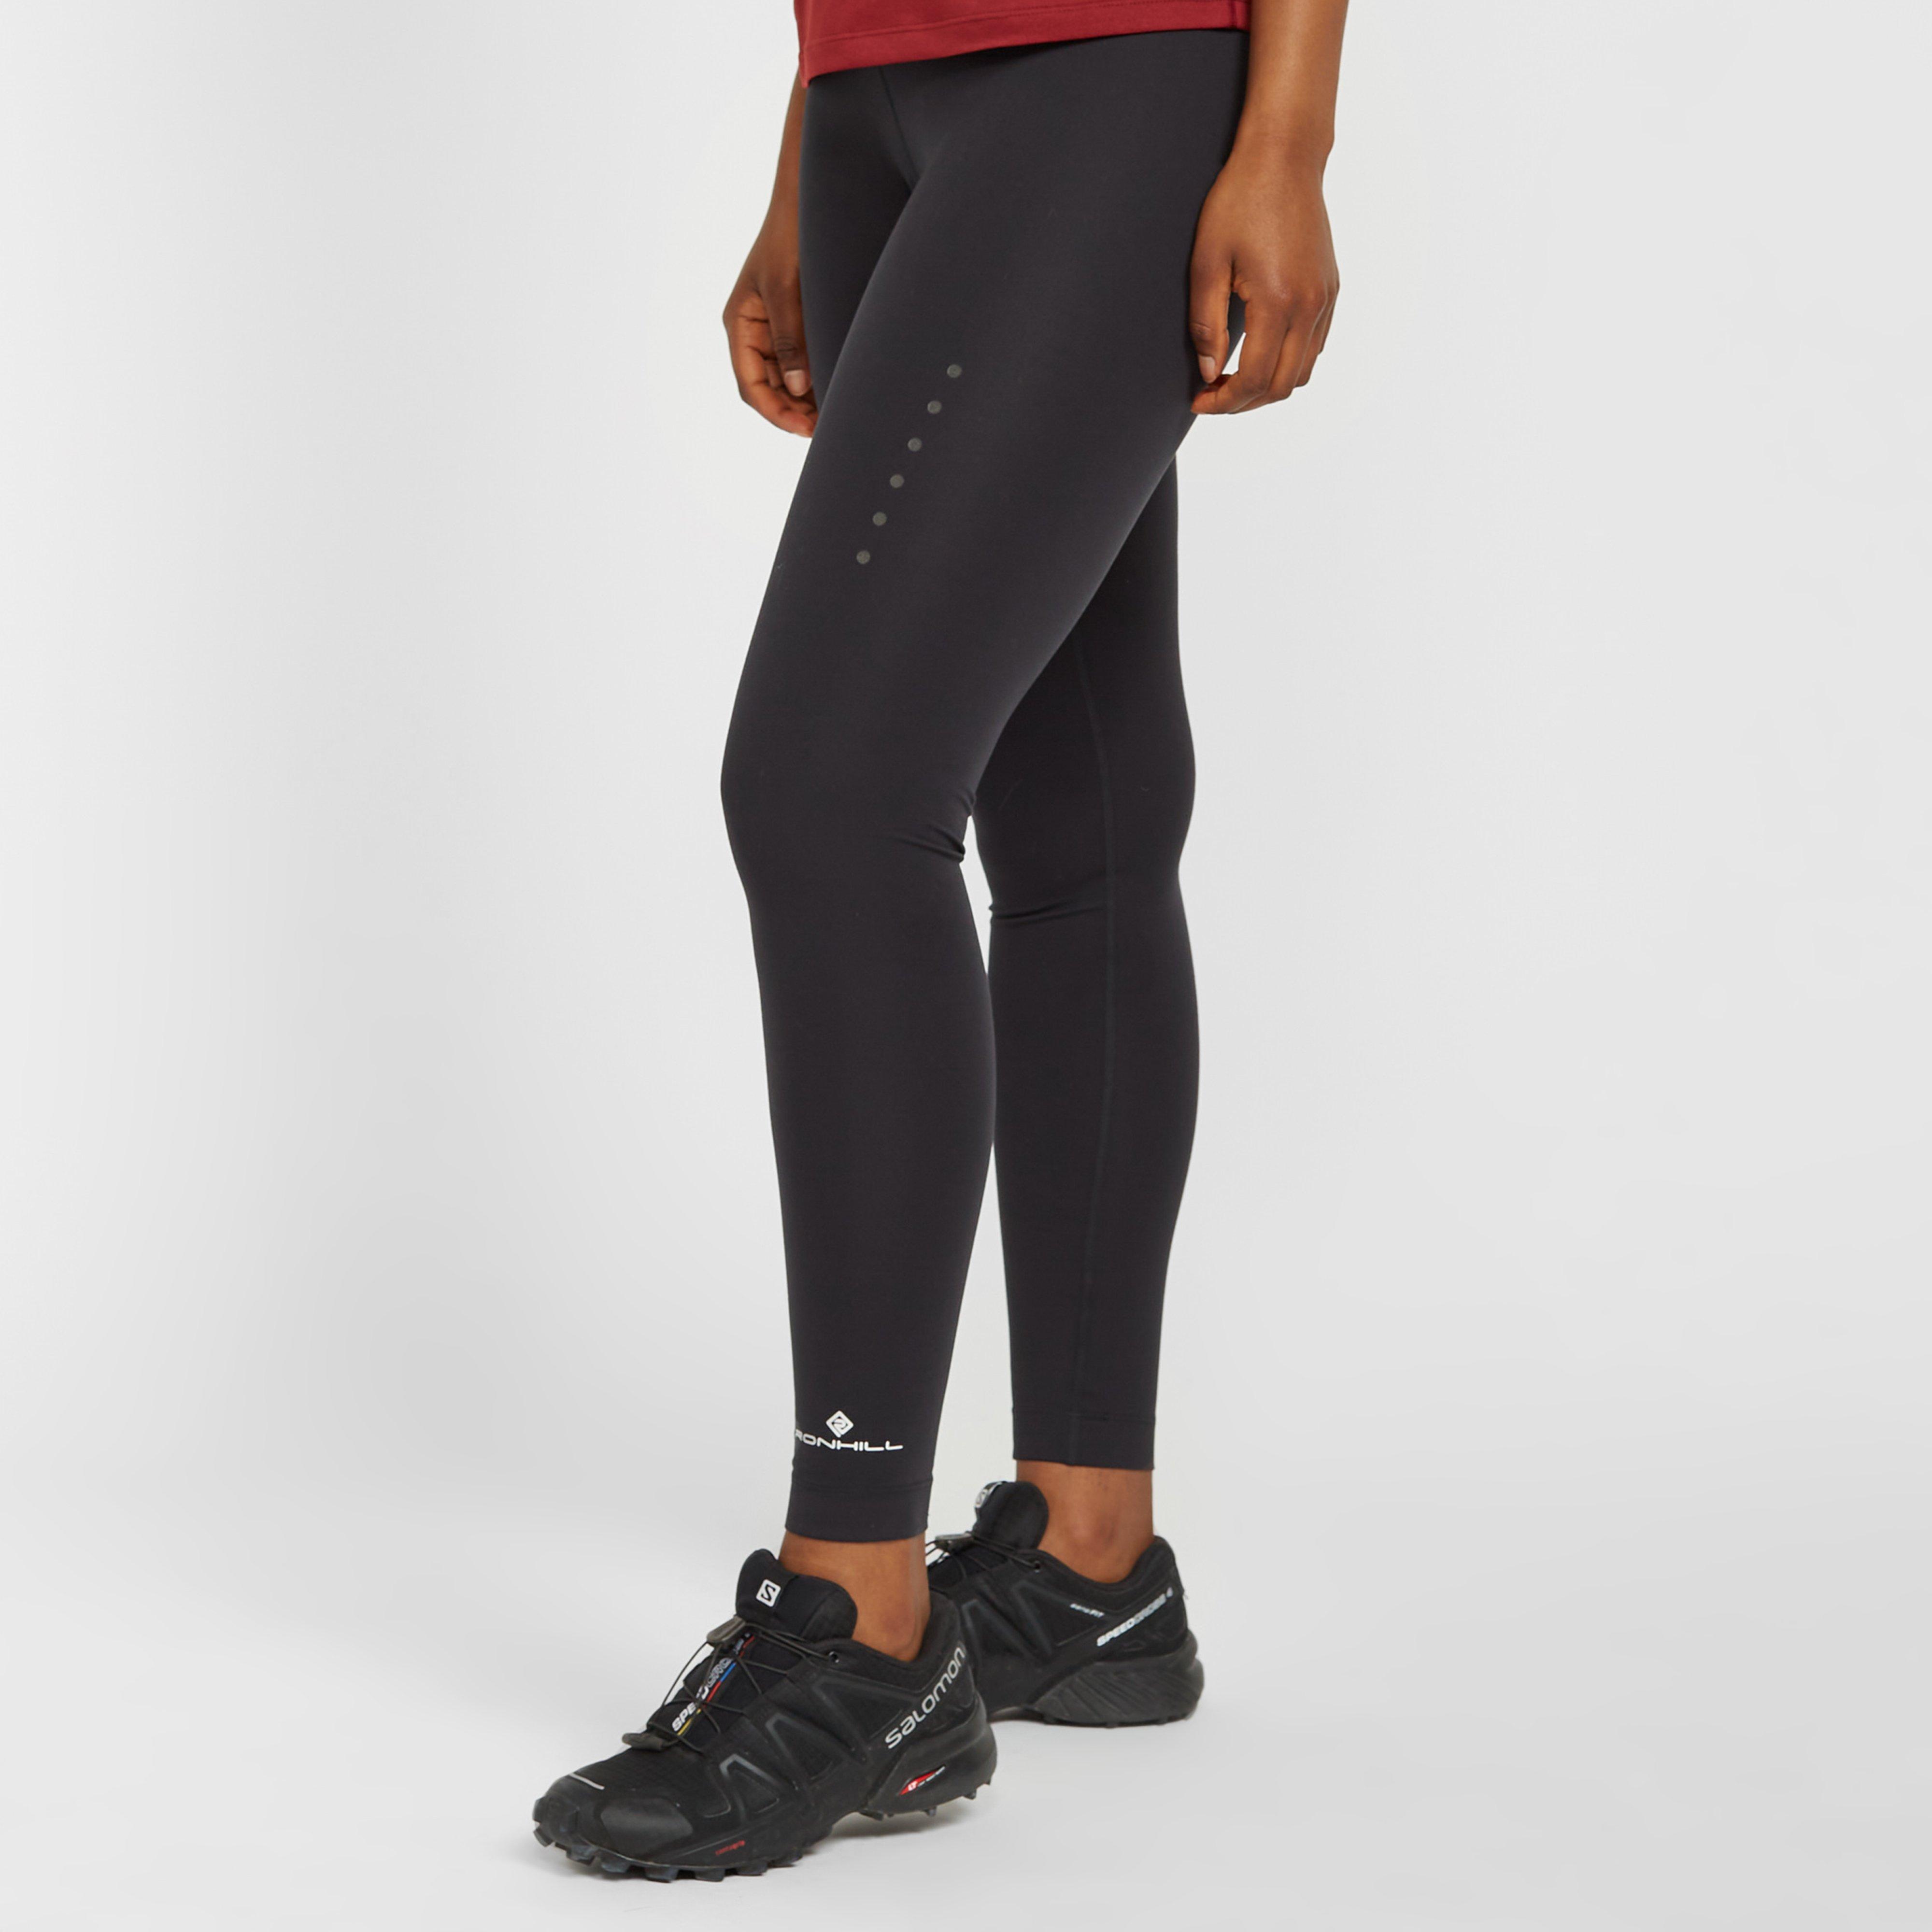 Ronhill Womens Core Running Tights - Black/black  Black/black